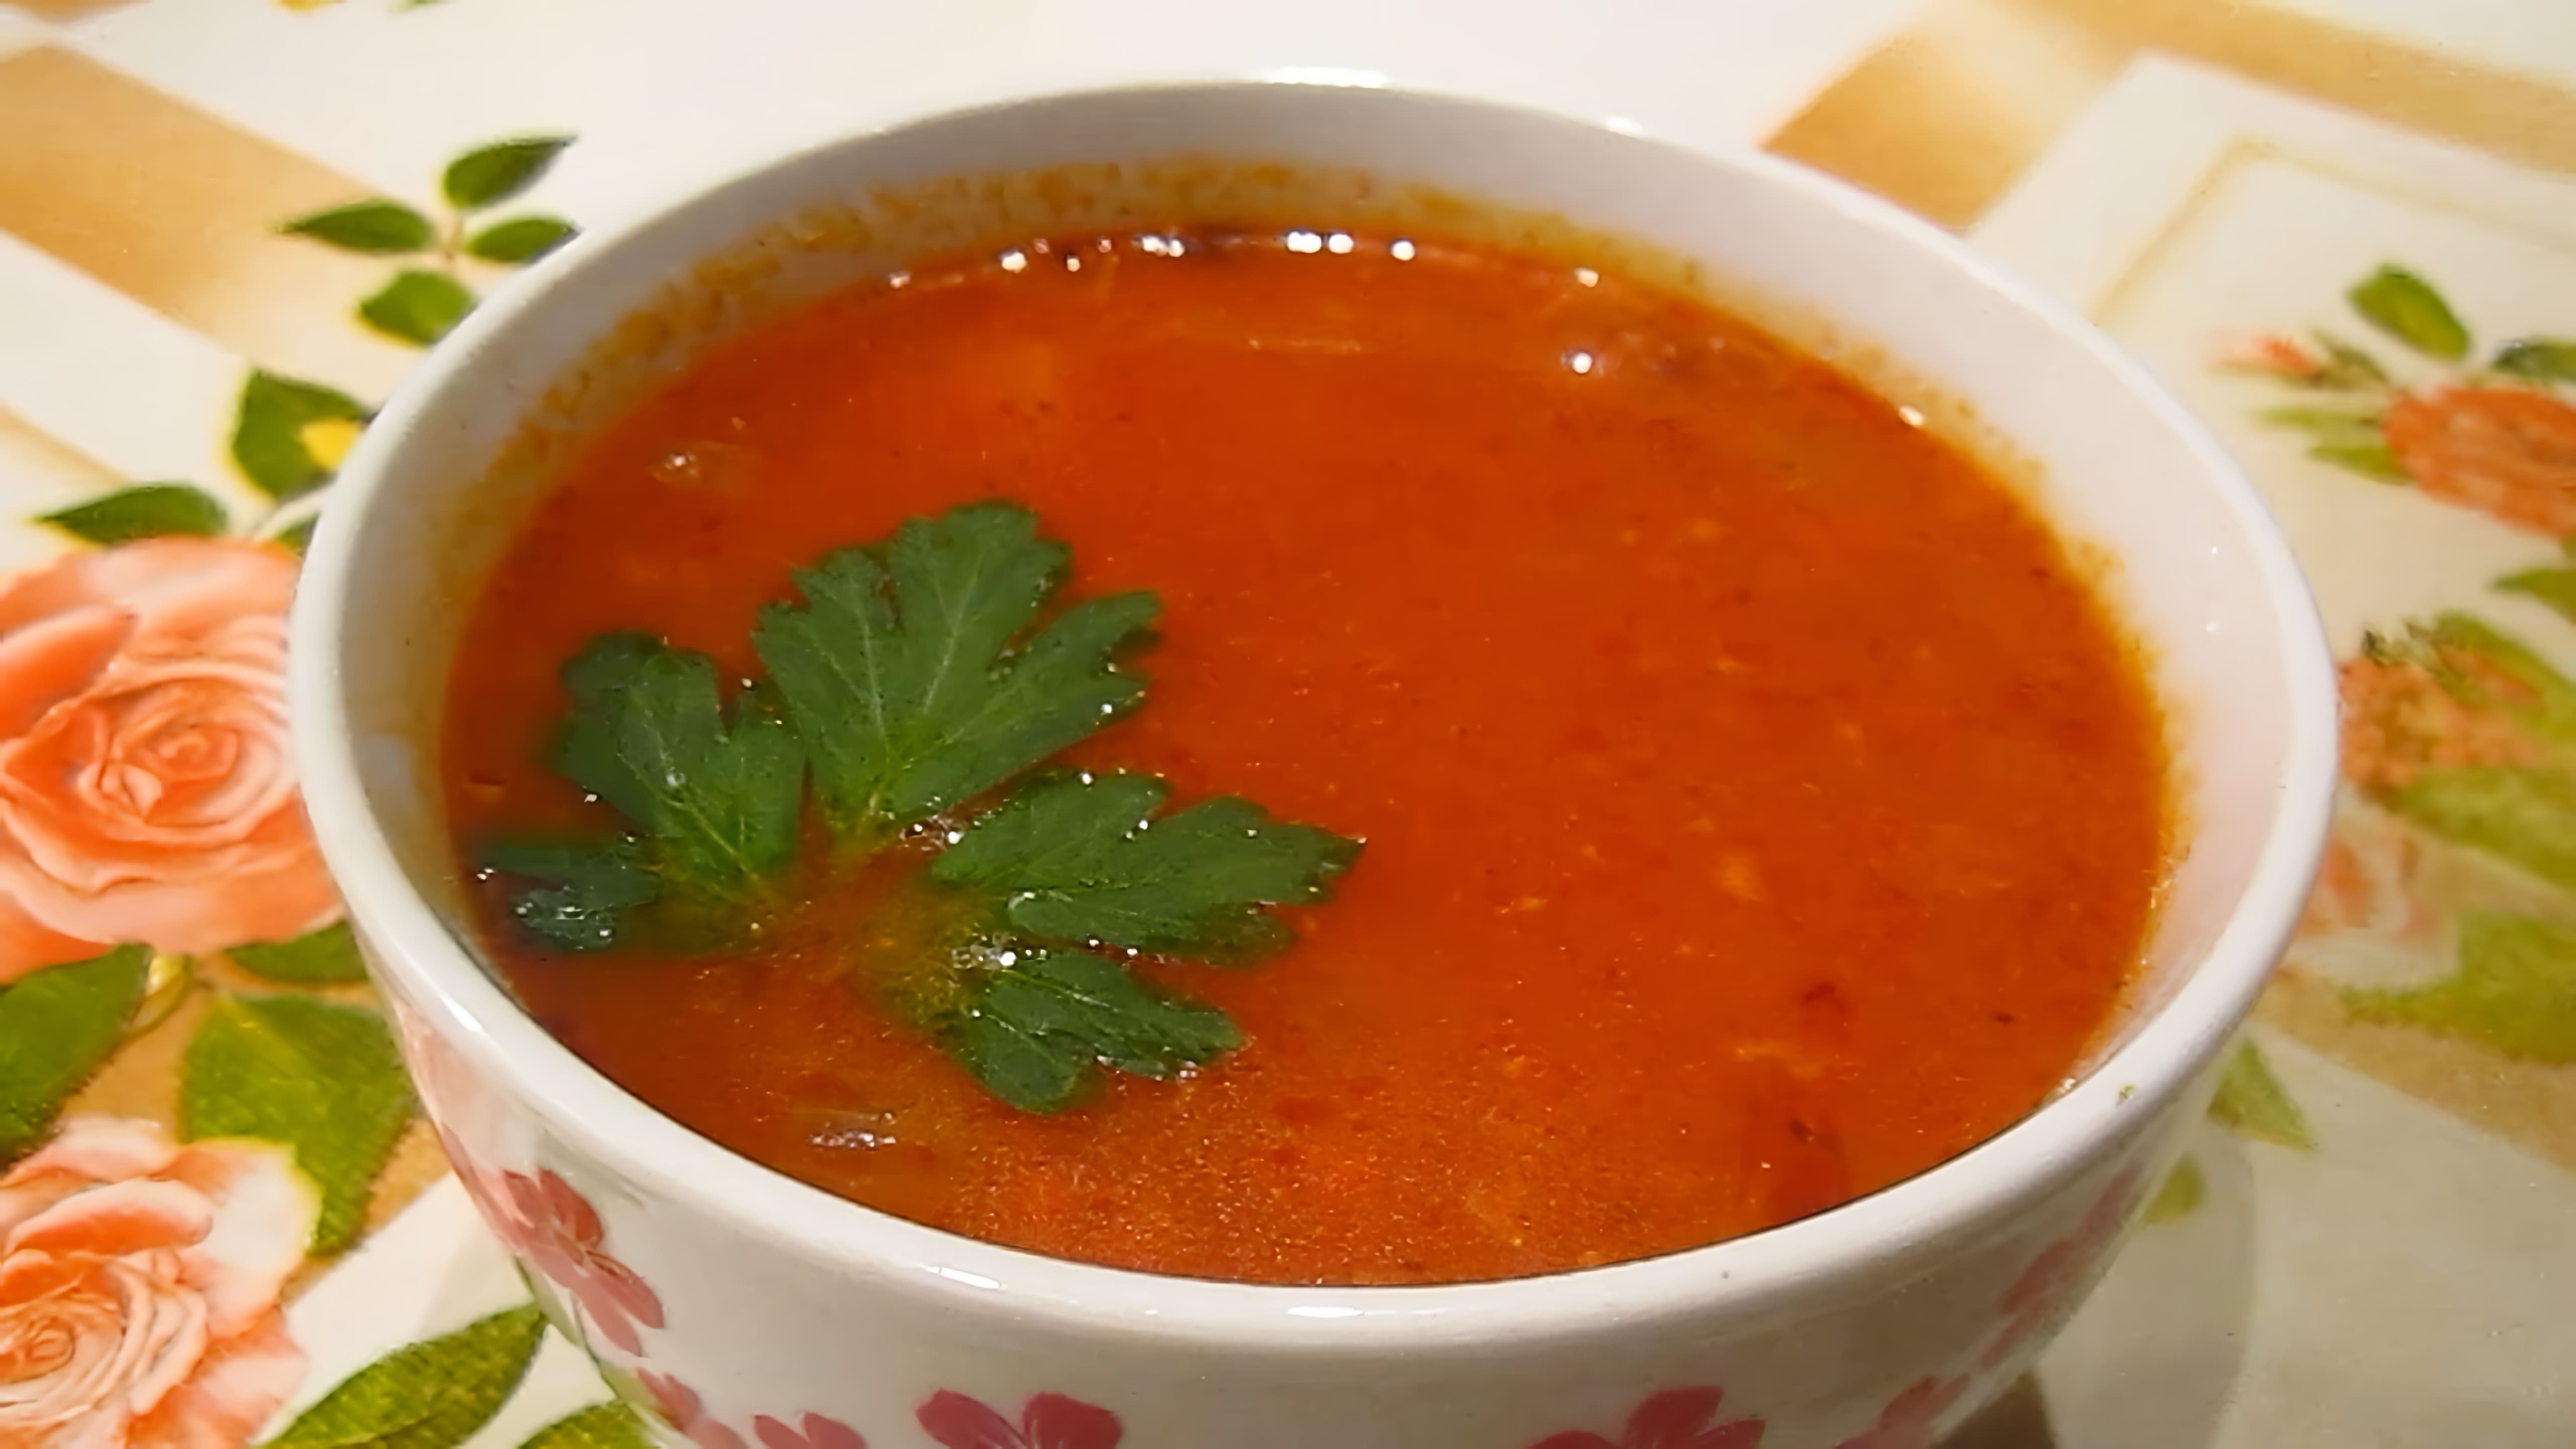 Суп-харчо с картофелем - это вкусное и питательное блюдо, которое можно приготовить в домашних условиях